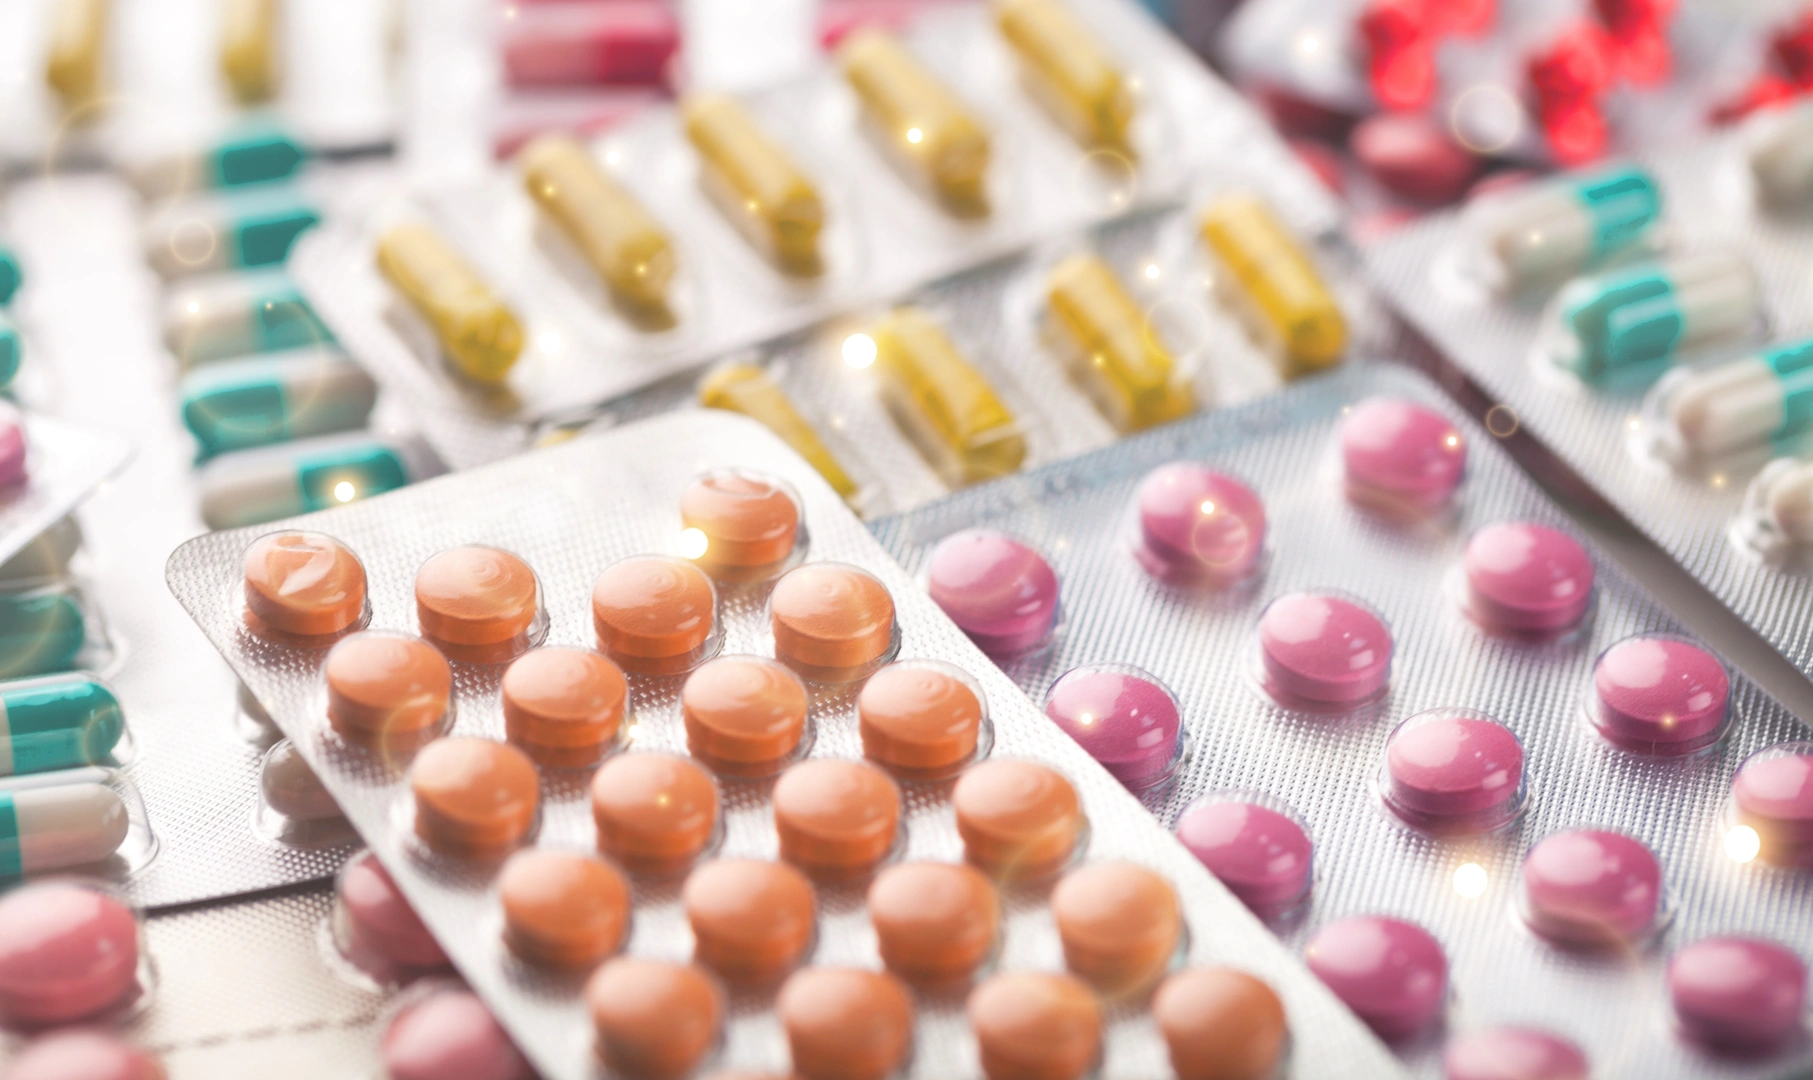 Blister packs of pastel medicine tablets